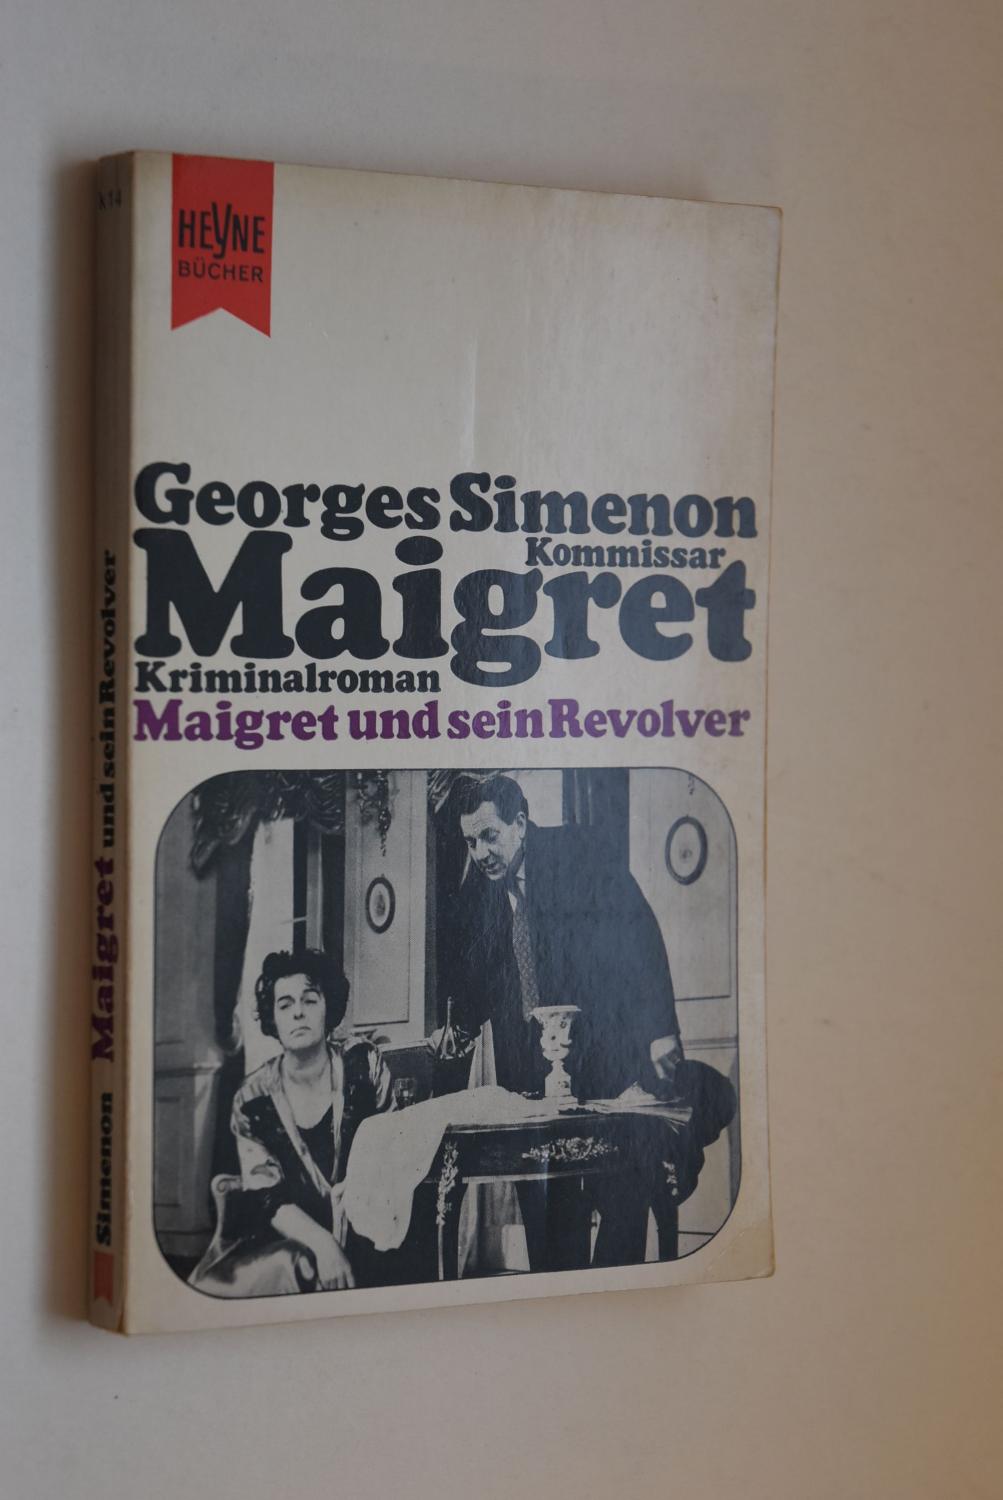 Maigret und sein Revolver : Kriminalroman. [Dt. Übers. von Hansjürgen Wille u. Barbara Klau] / Heyne-Bücher : Simenon-Kriminalromane ; Bd. 14